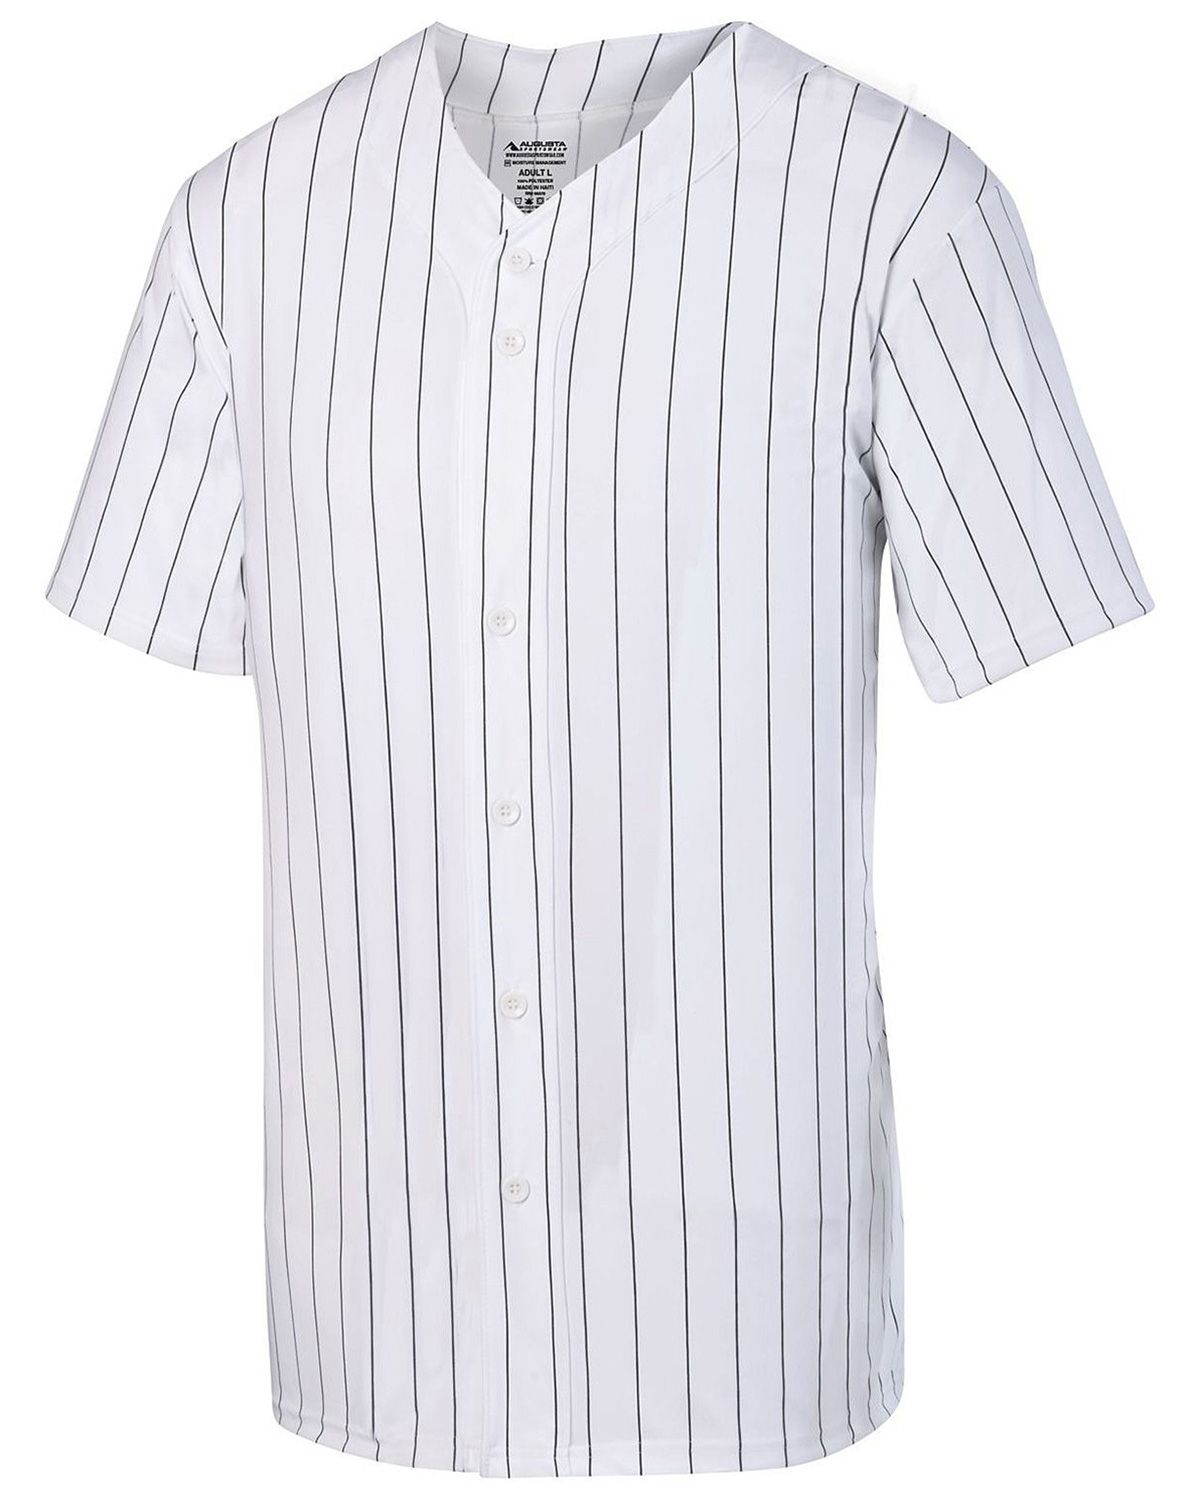 baseball jersey wholesale blank